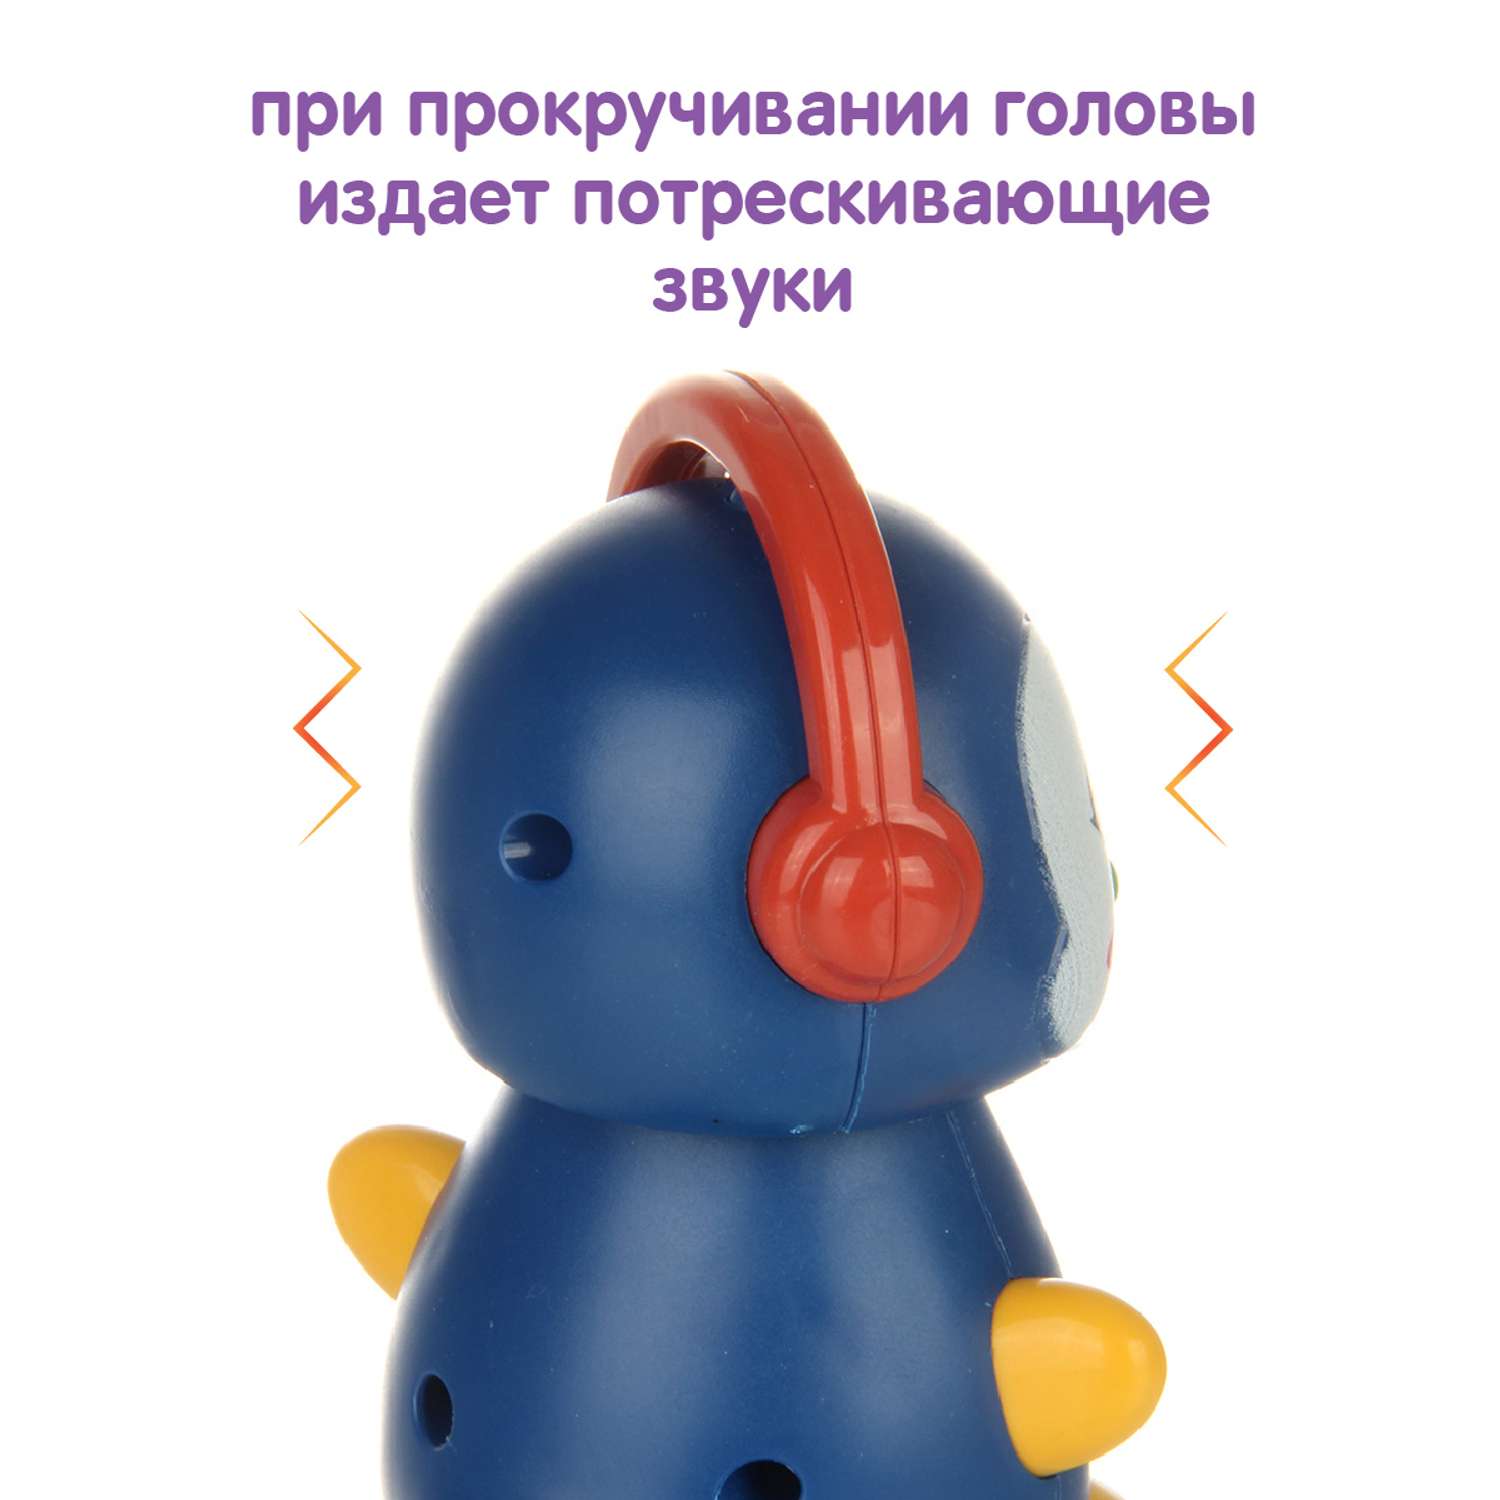 Развивающая игрушка Ути Пути Покатушка Пингвин со звуками - фото 3